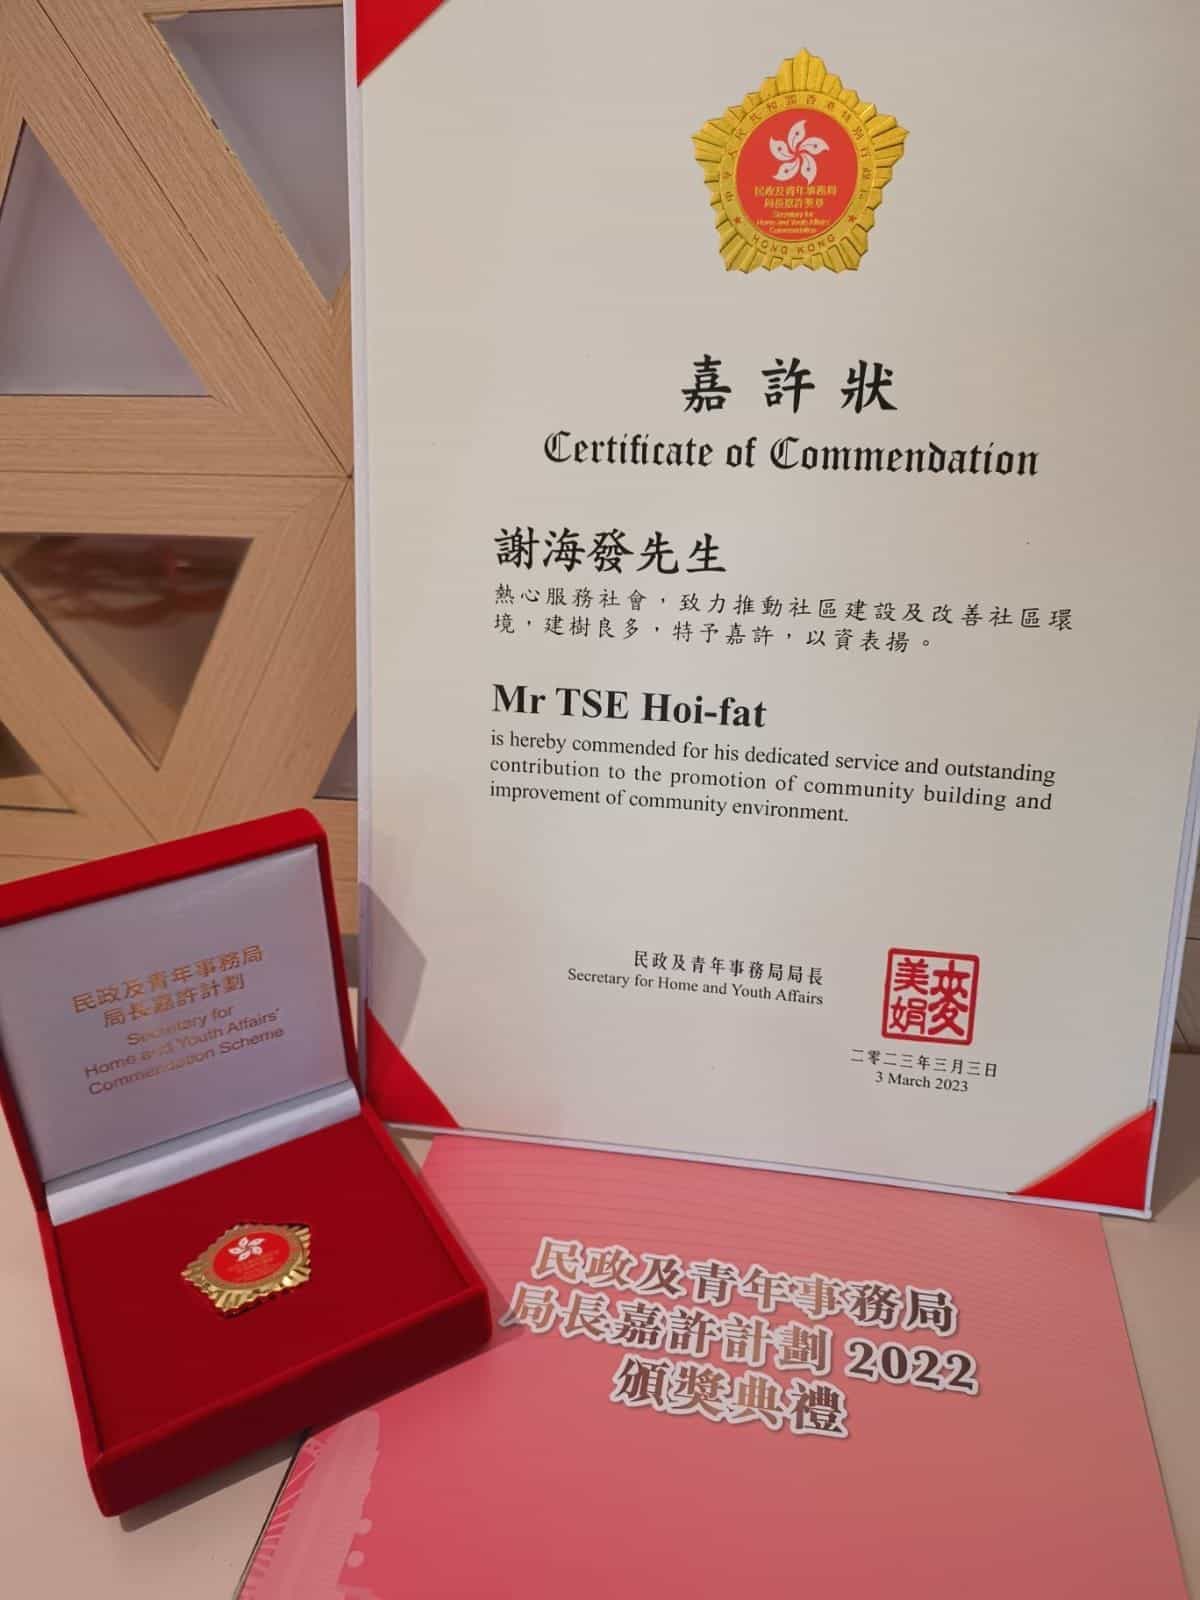 香港青年創業家總商會 - 本會主席謝海發教授於「民政及青年事務局局長嘉許計劃」獲頒嘉許狀